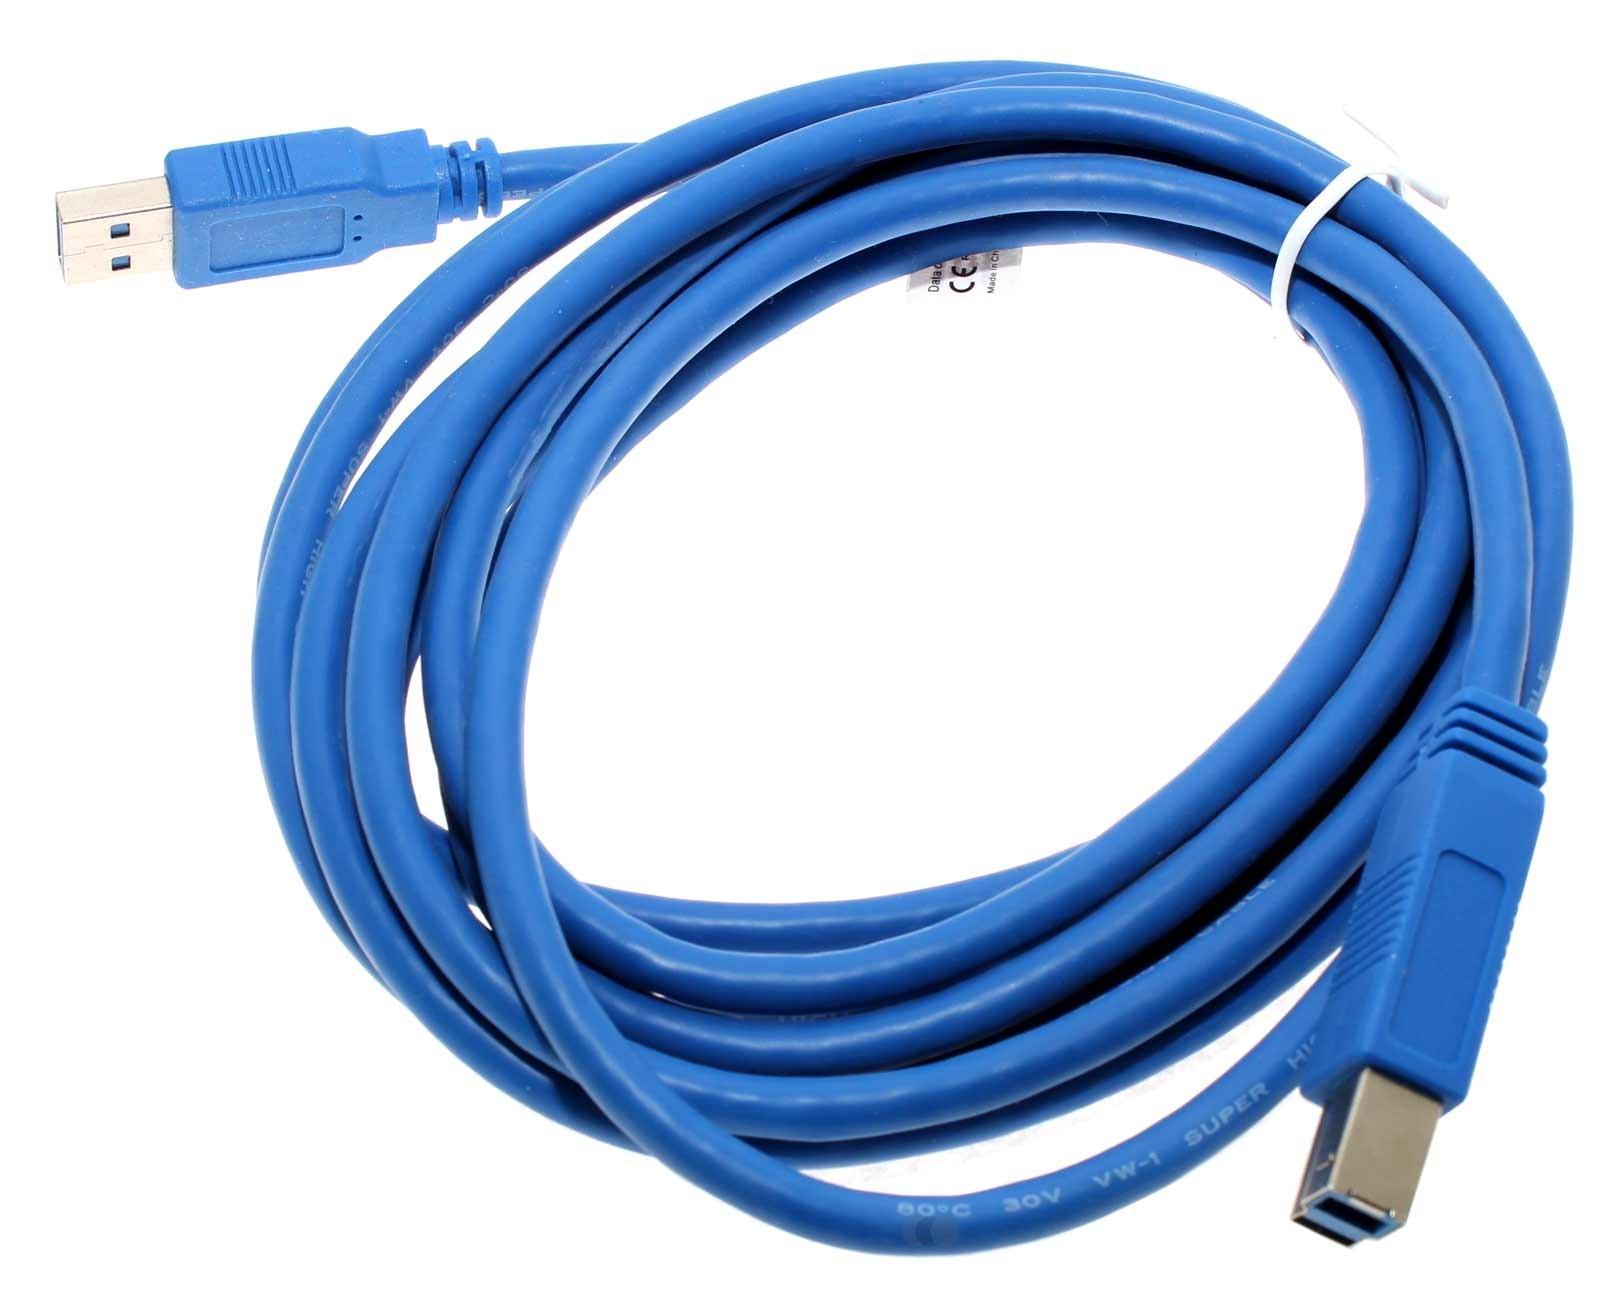 3m USB 3.0 Kabel Stecker Typ A auf Stecker Typ B für Drucker, Scanner, HDD, 5 GBit/s